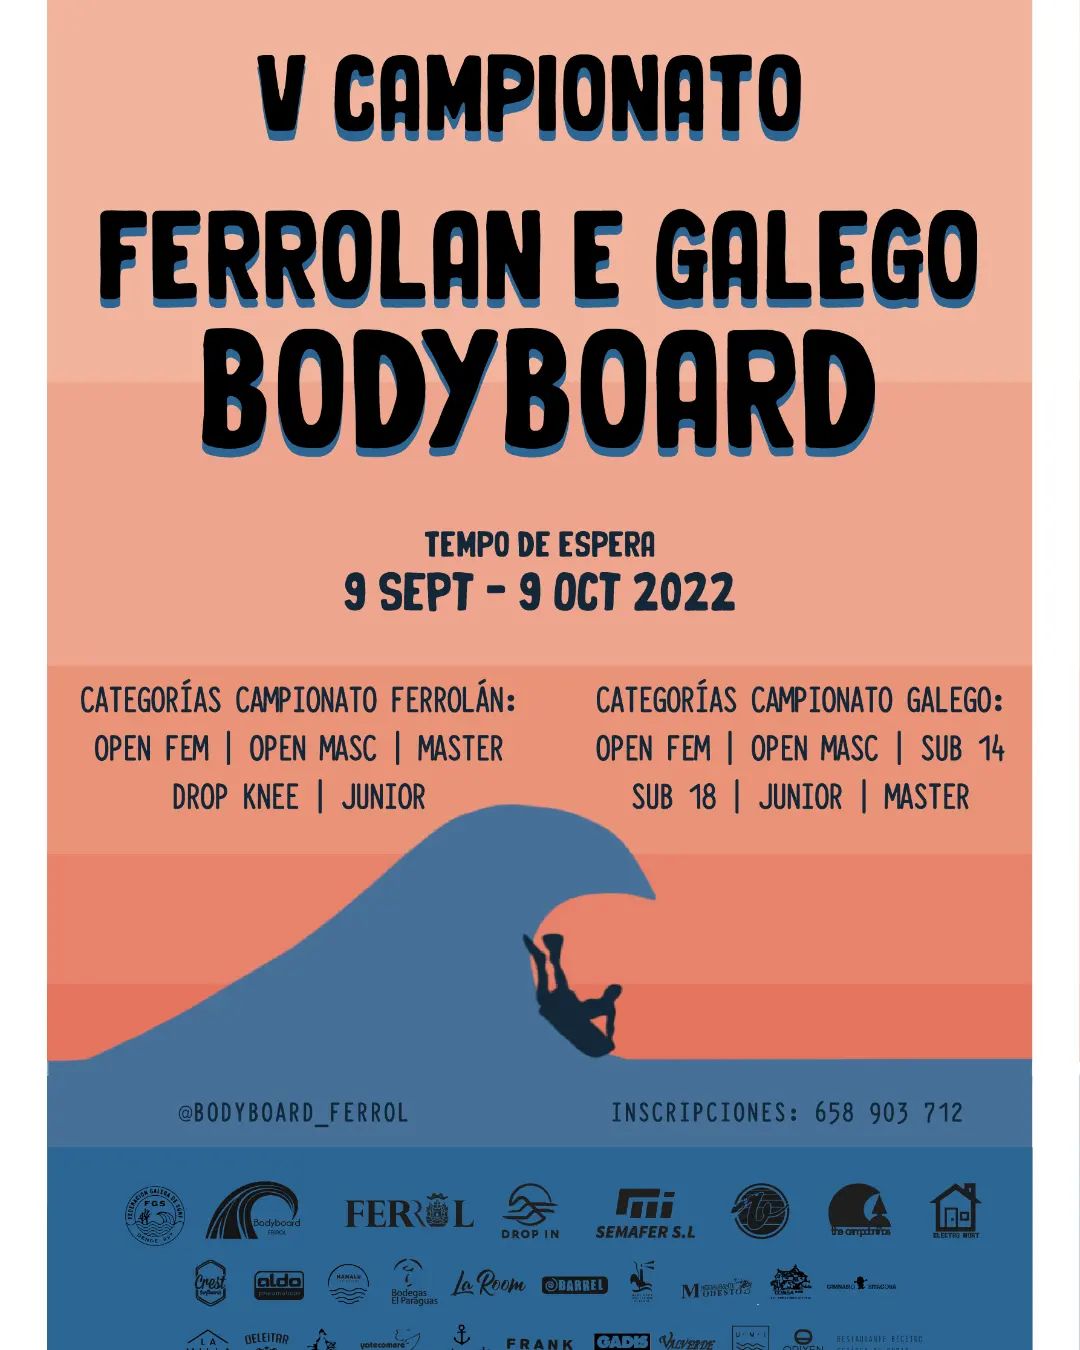 Campionato Ferrolán de Bodyboard 2022